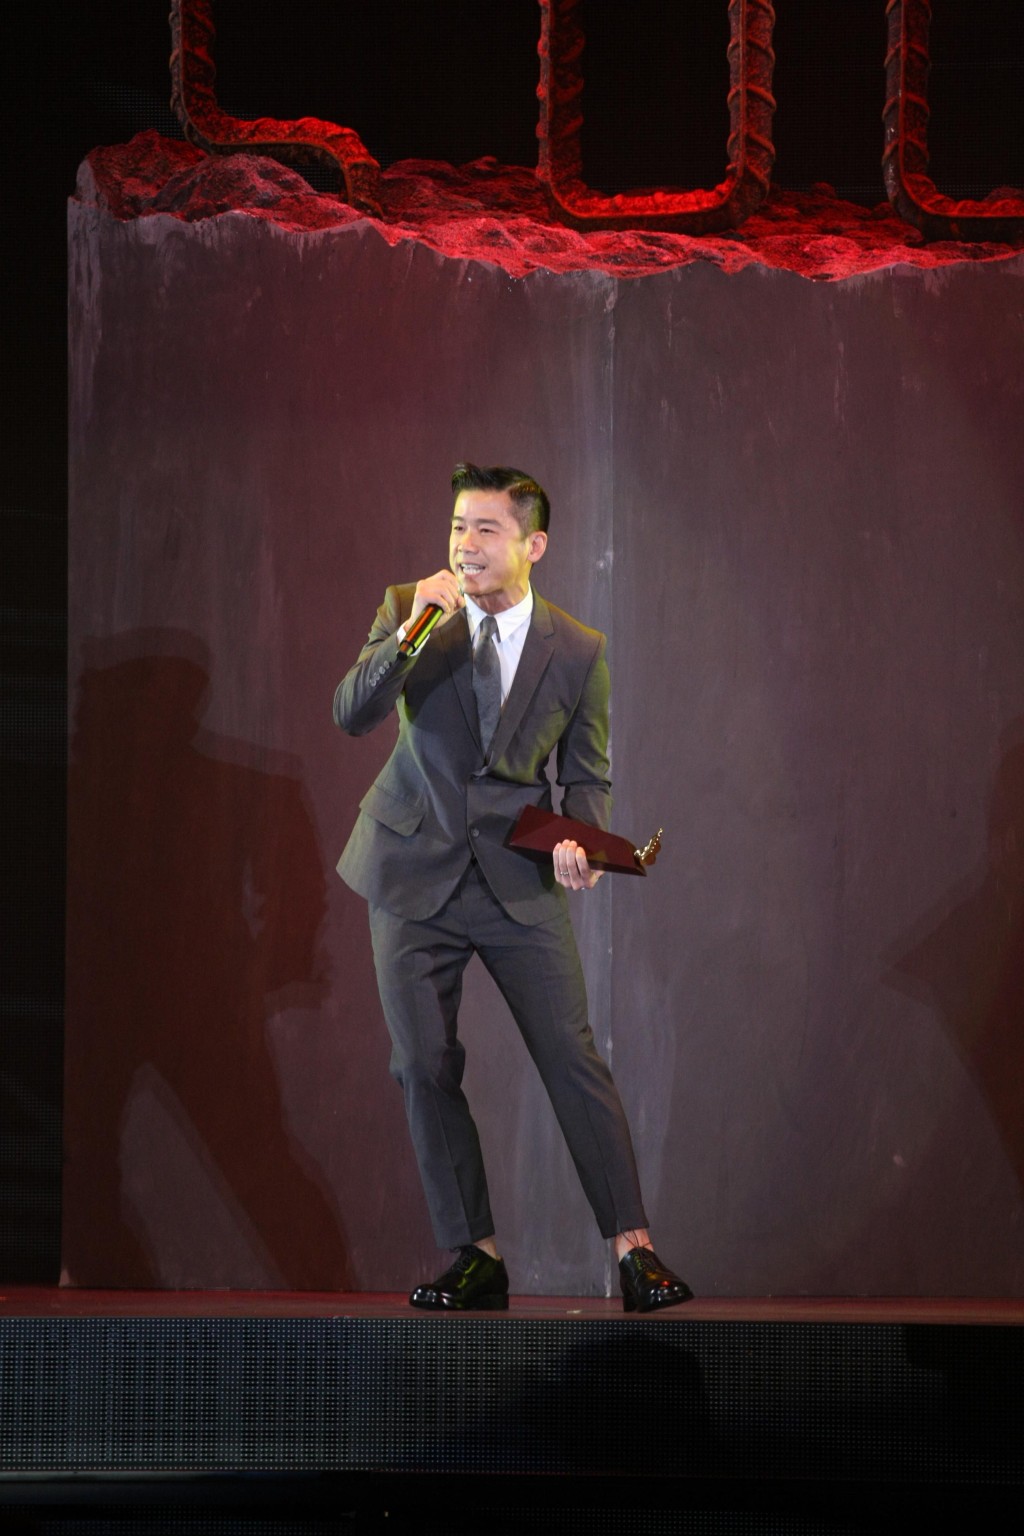 林海峰在「叱咤樂壇流行榜頒獎典禮」上多度奪獎。